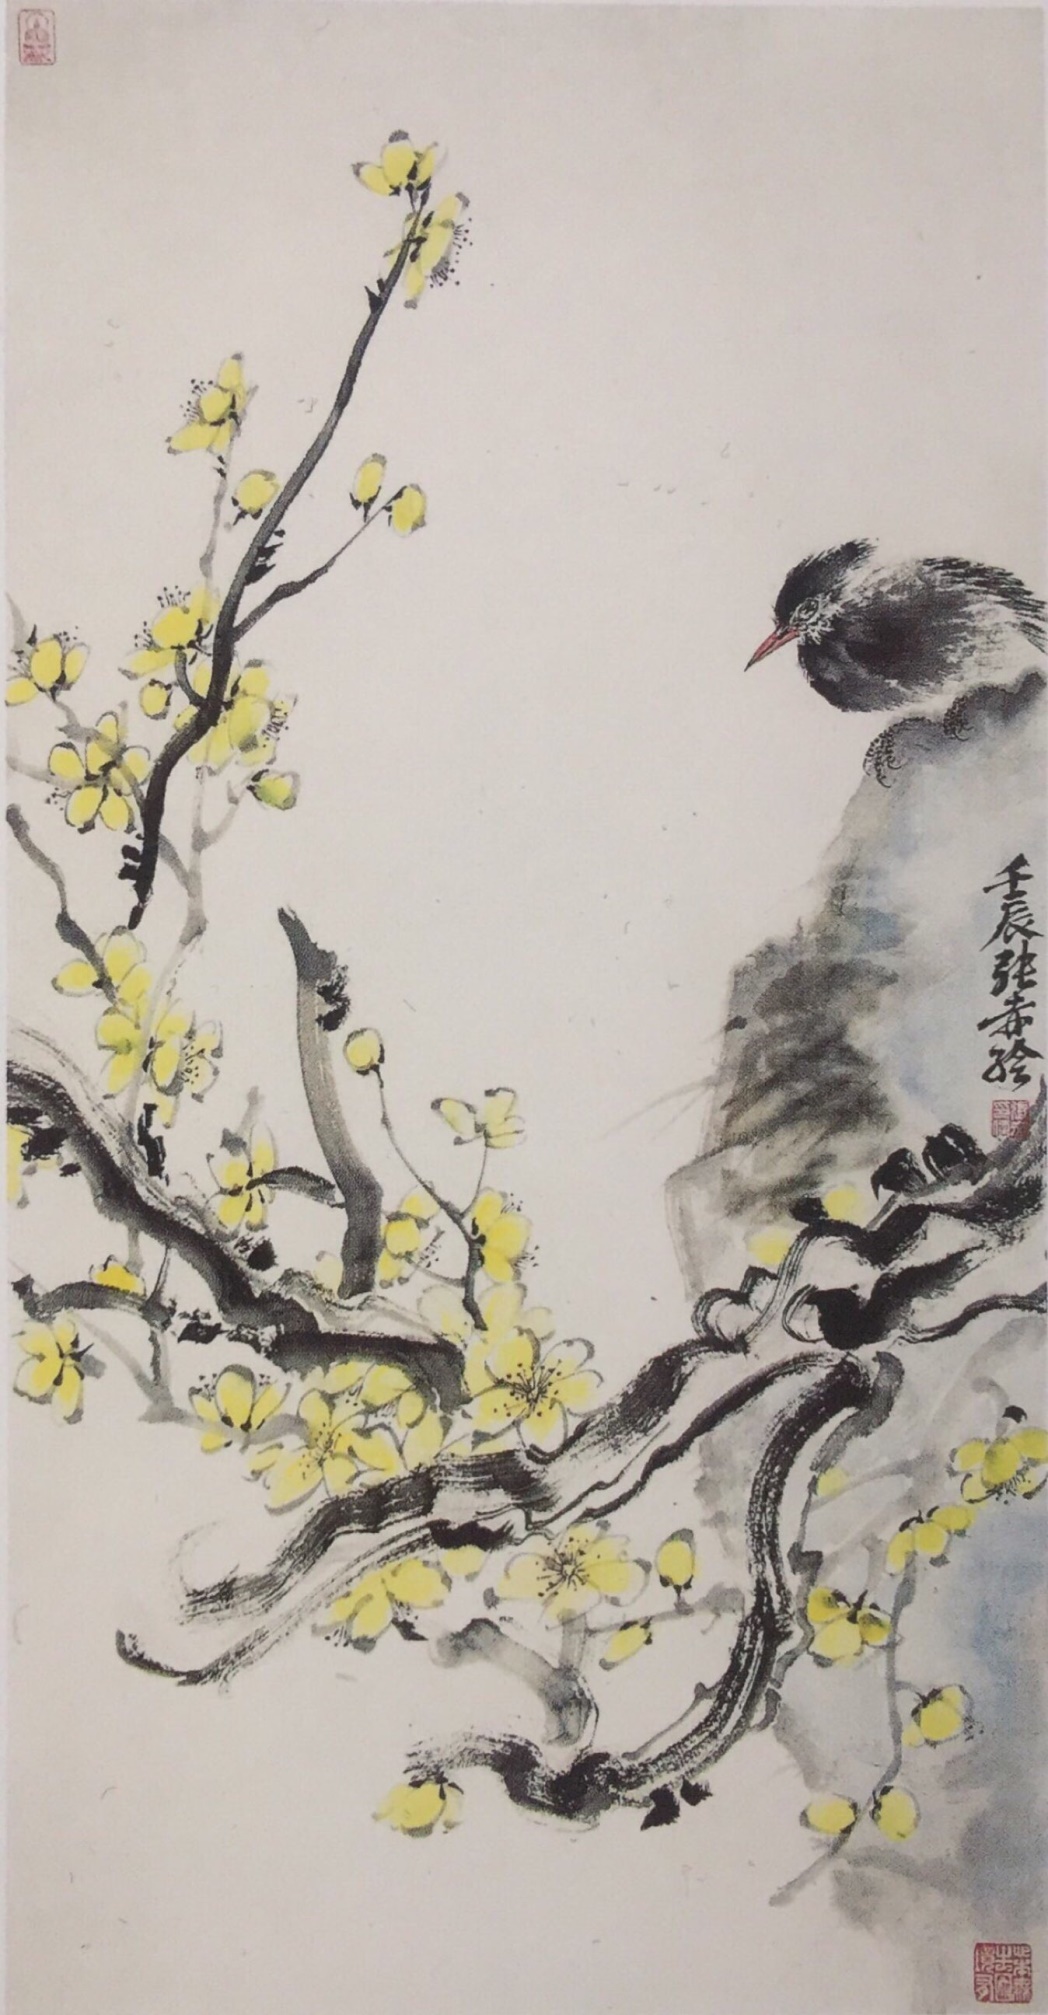 中国美术学院美术考级花鸟画考级六级(中级)示范图例。